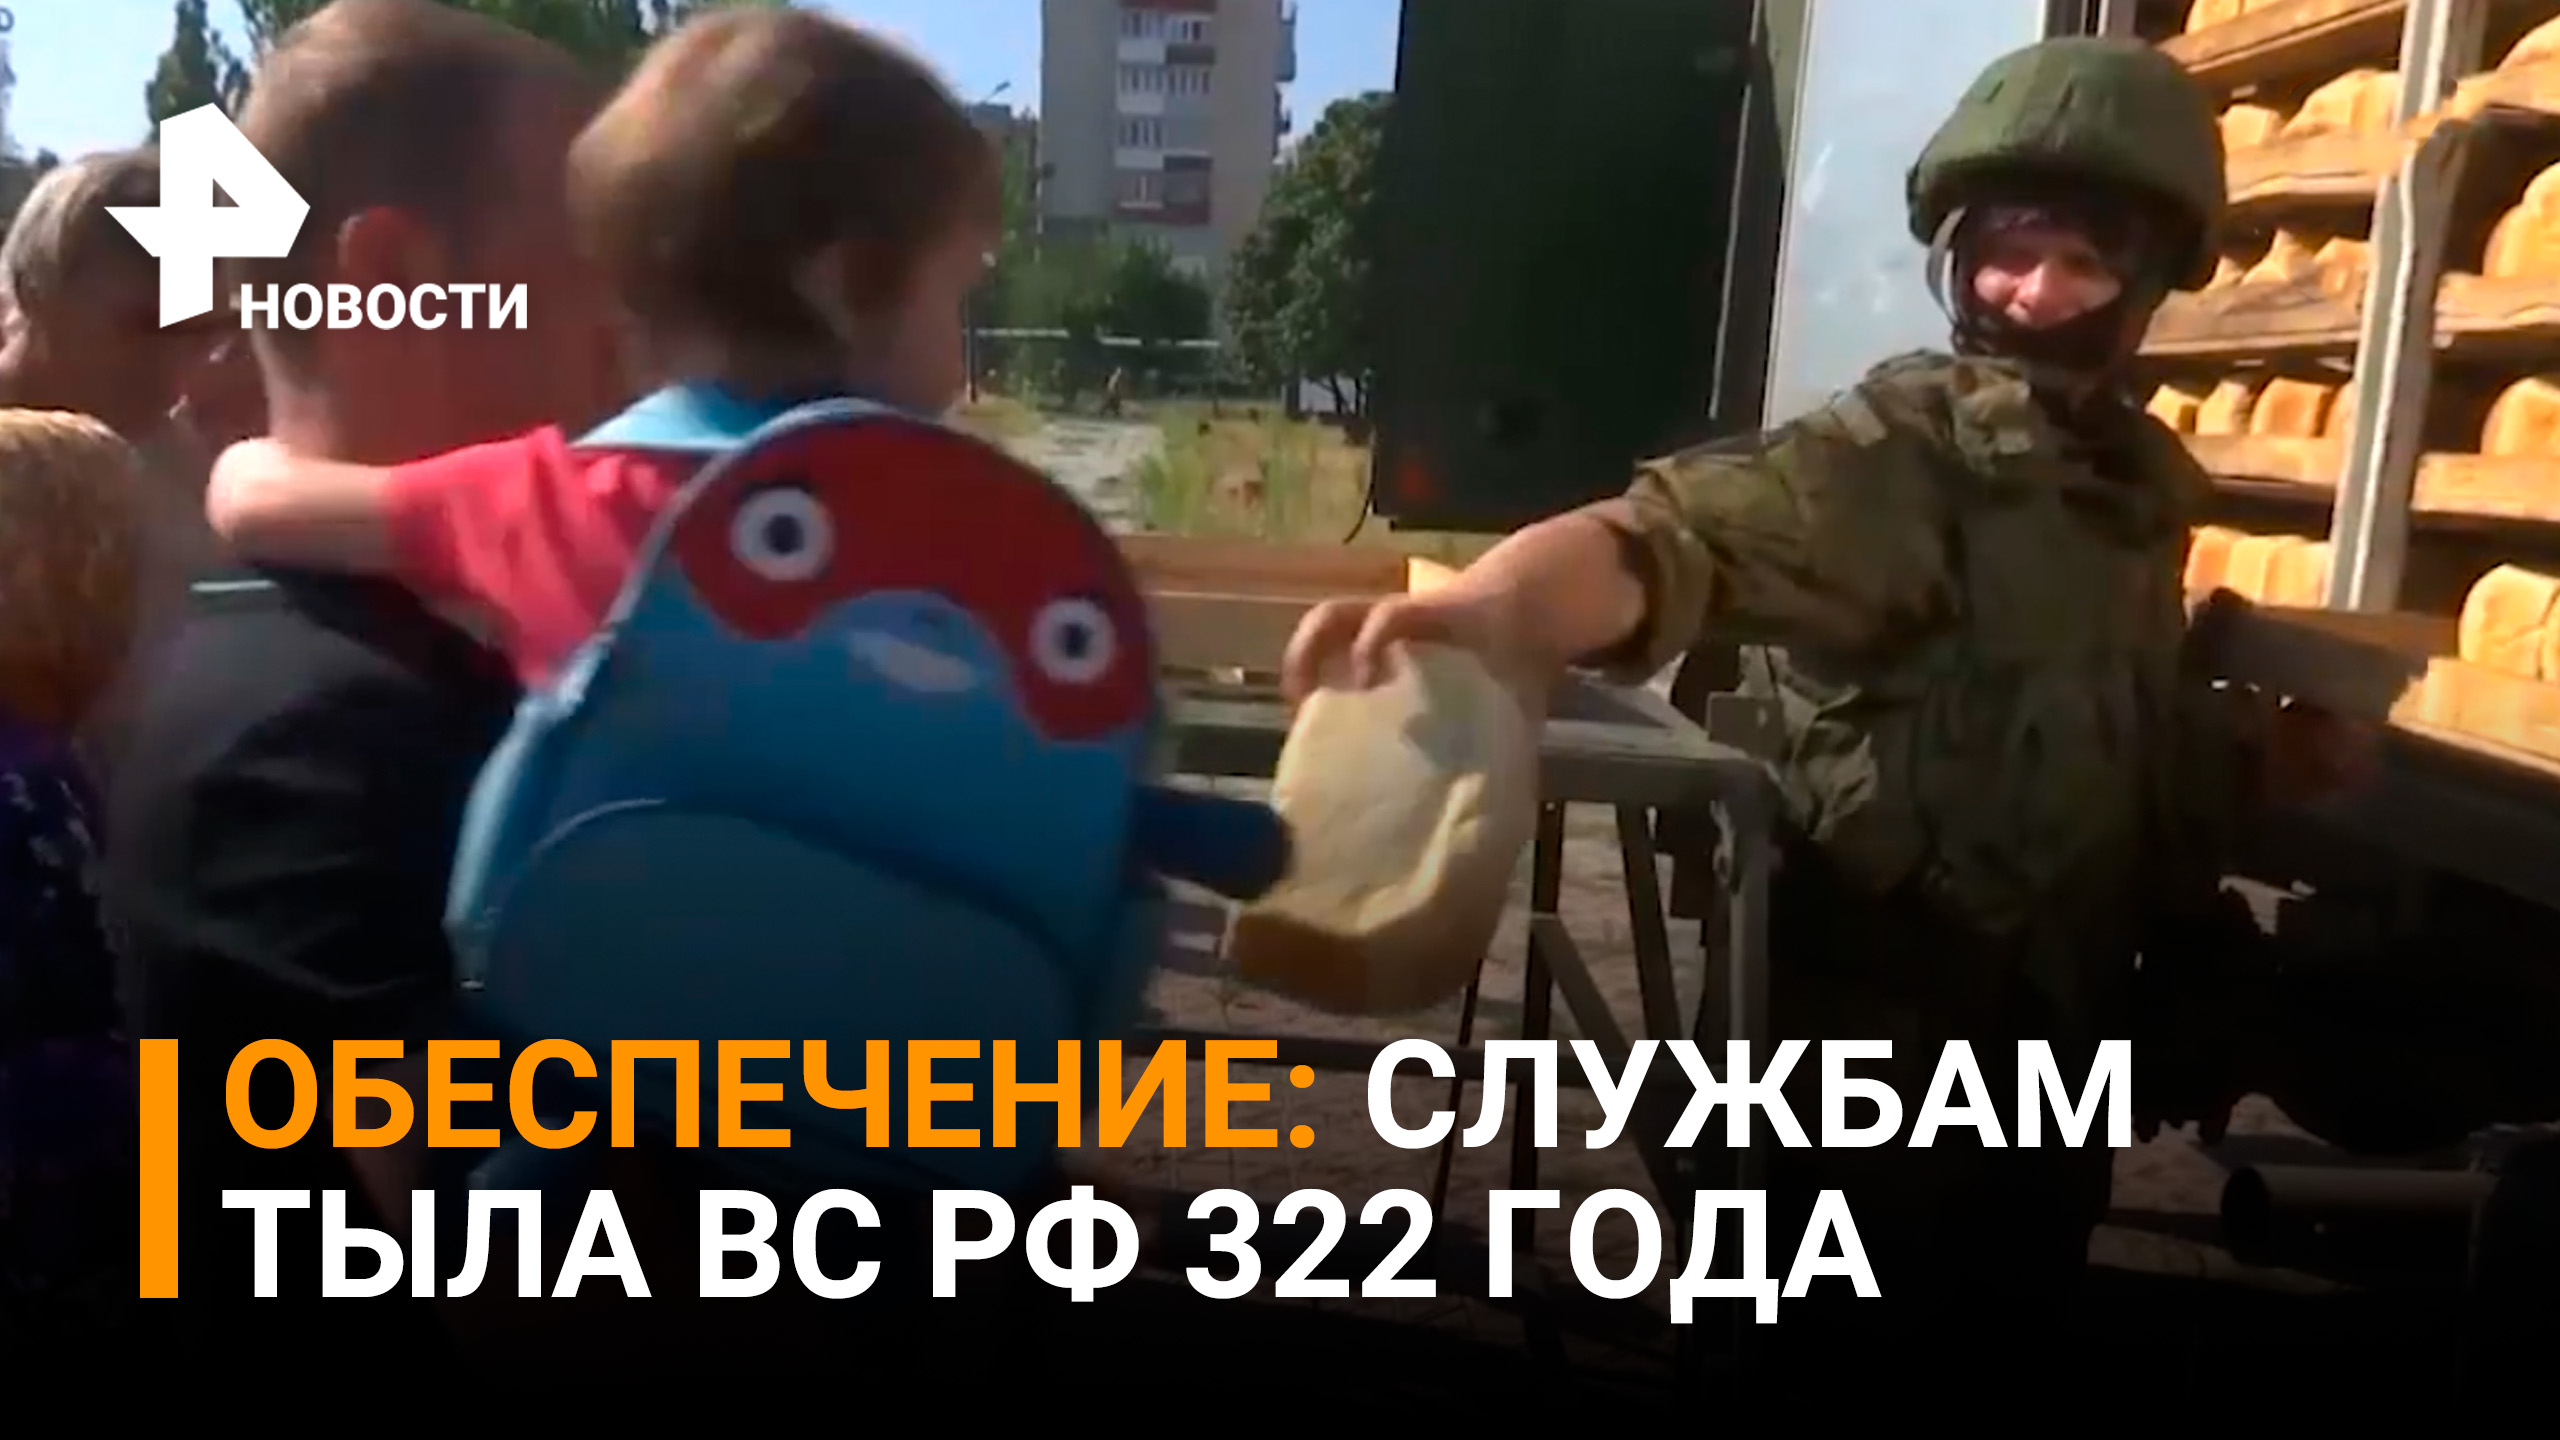 Уникальный поезд обеспечения ВС РФ поддерживает войска и выпекает хлеб для мирных жителей / РЕН